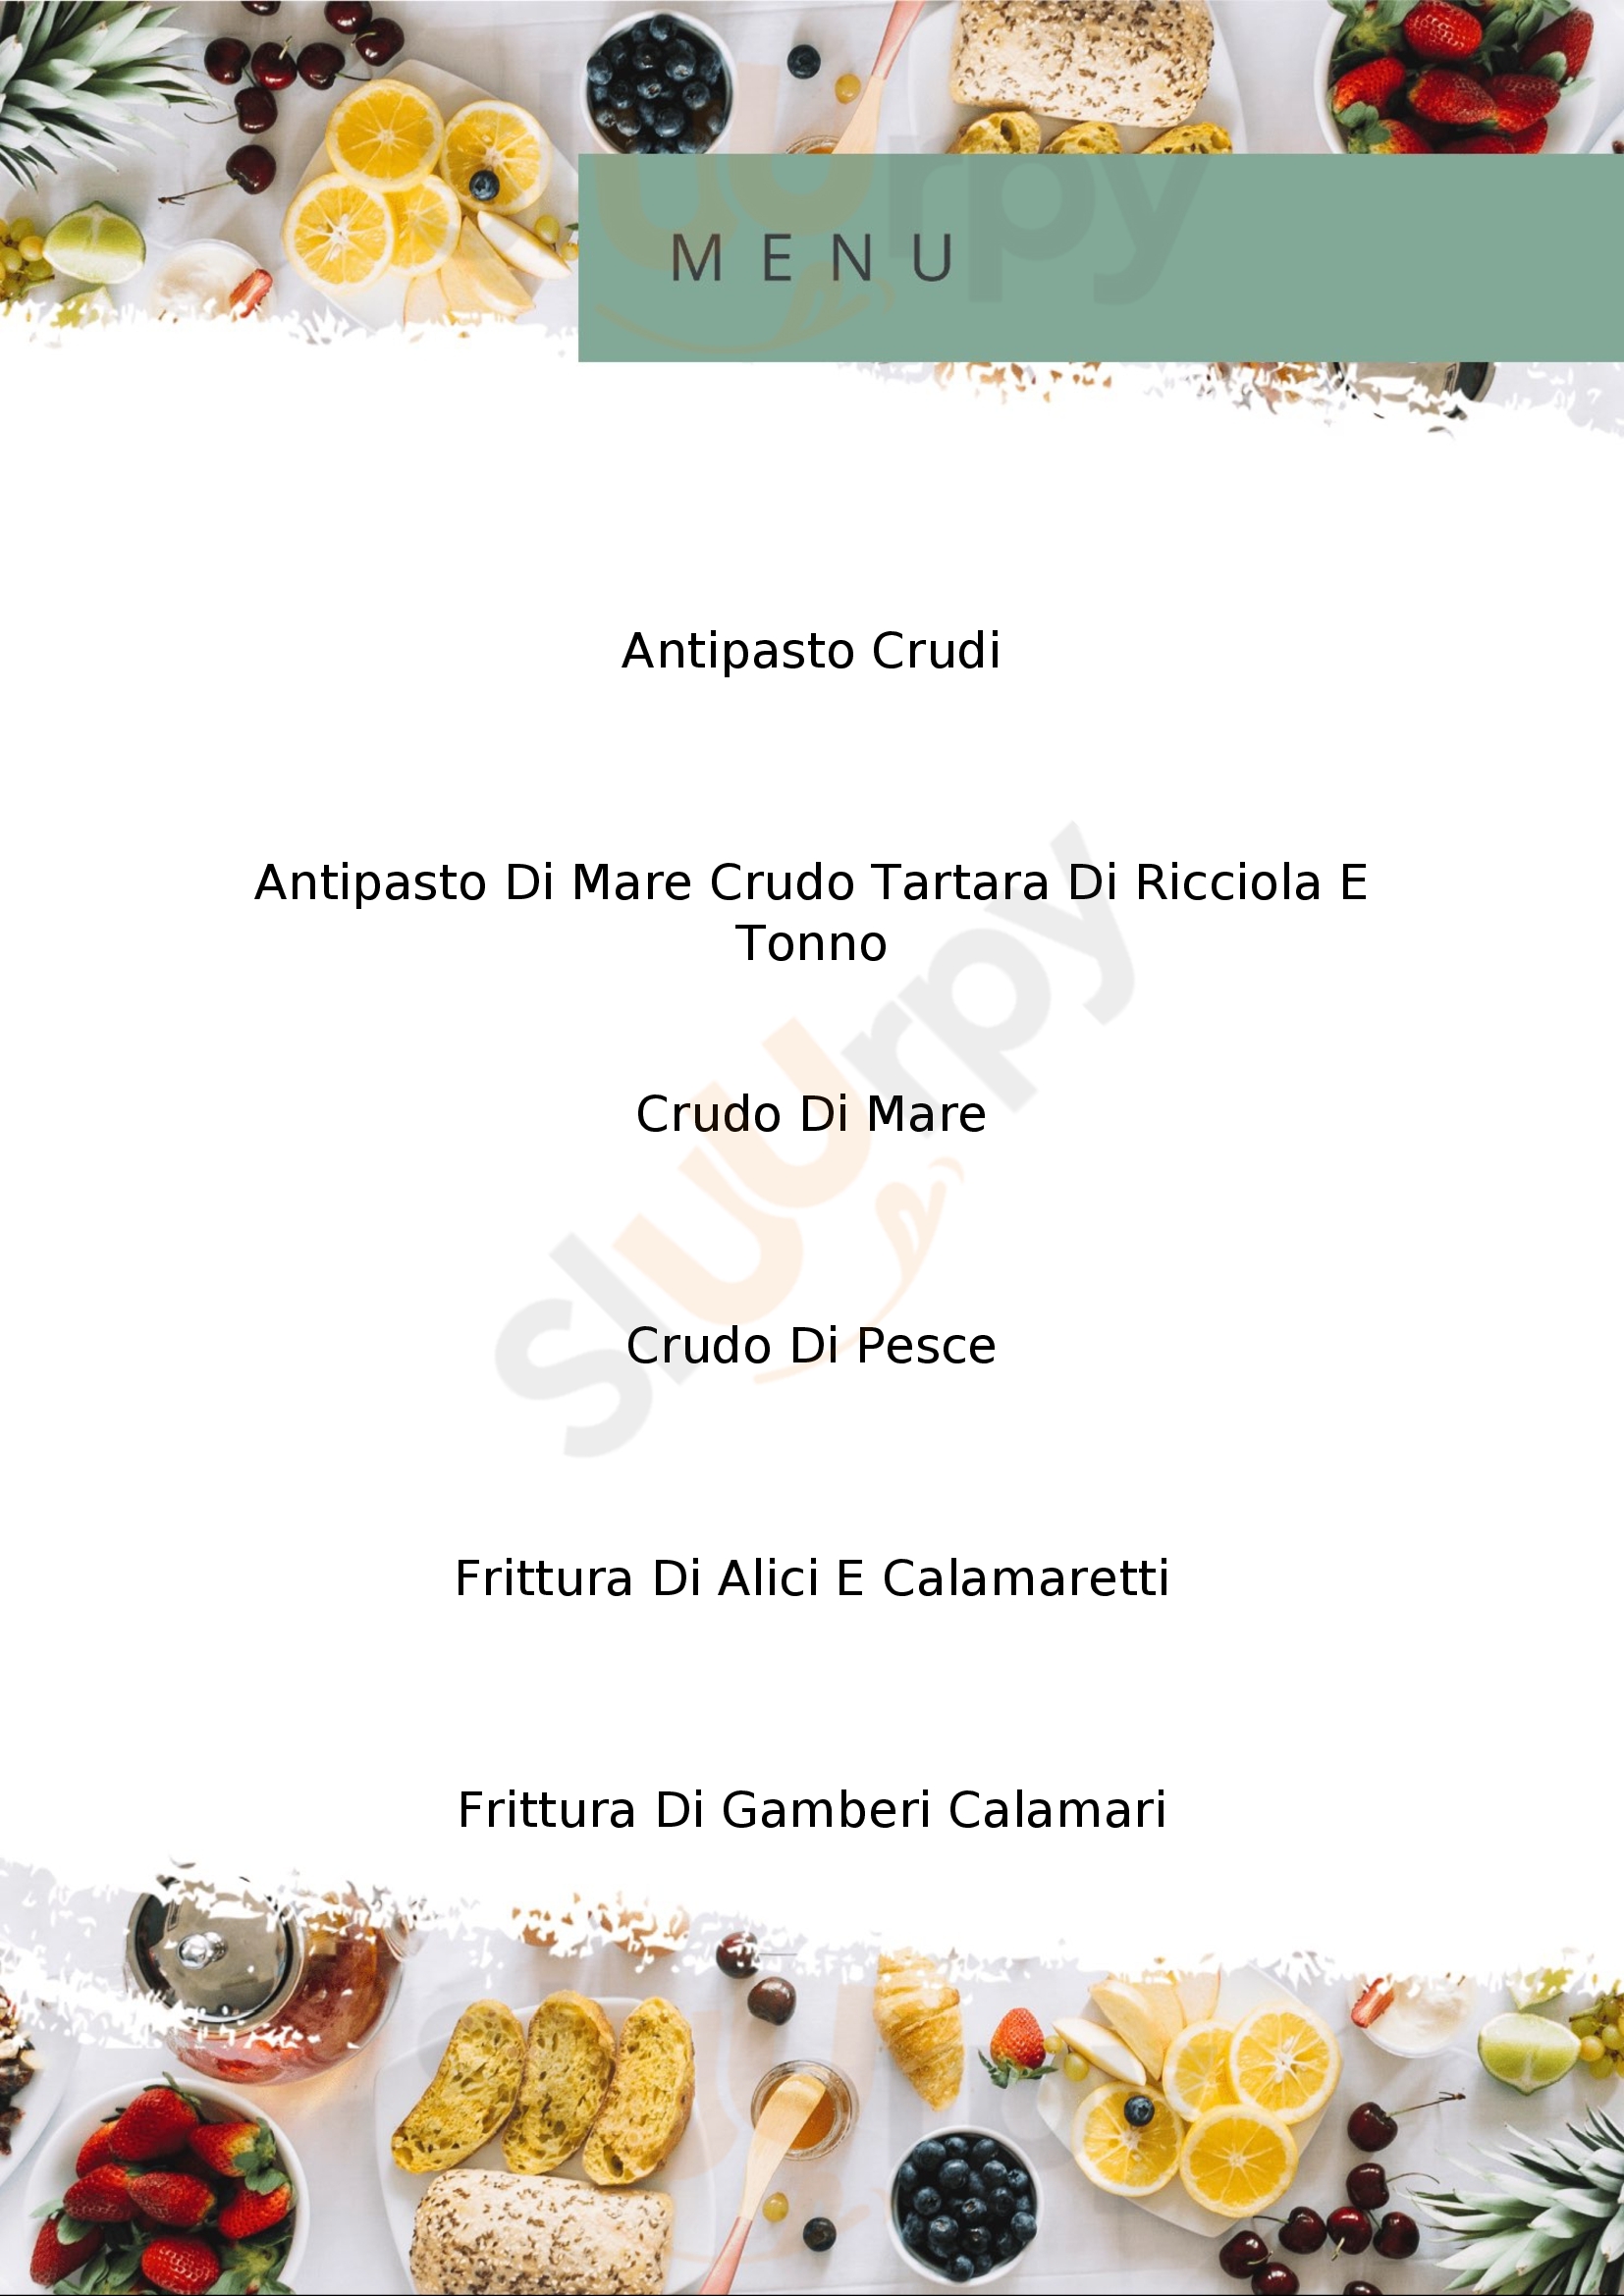 Ristorante Calasole Napoli menù 1 pagina